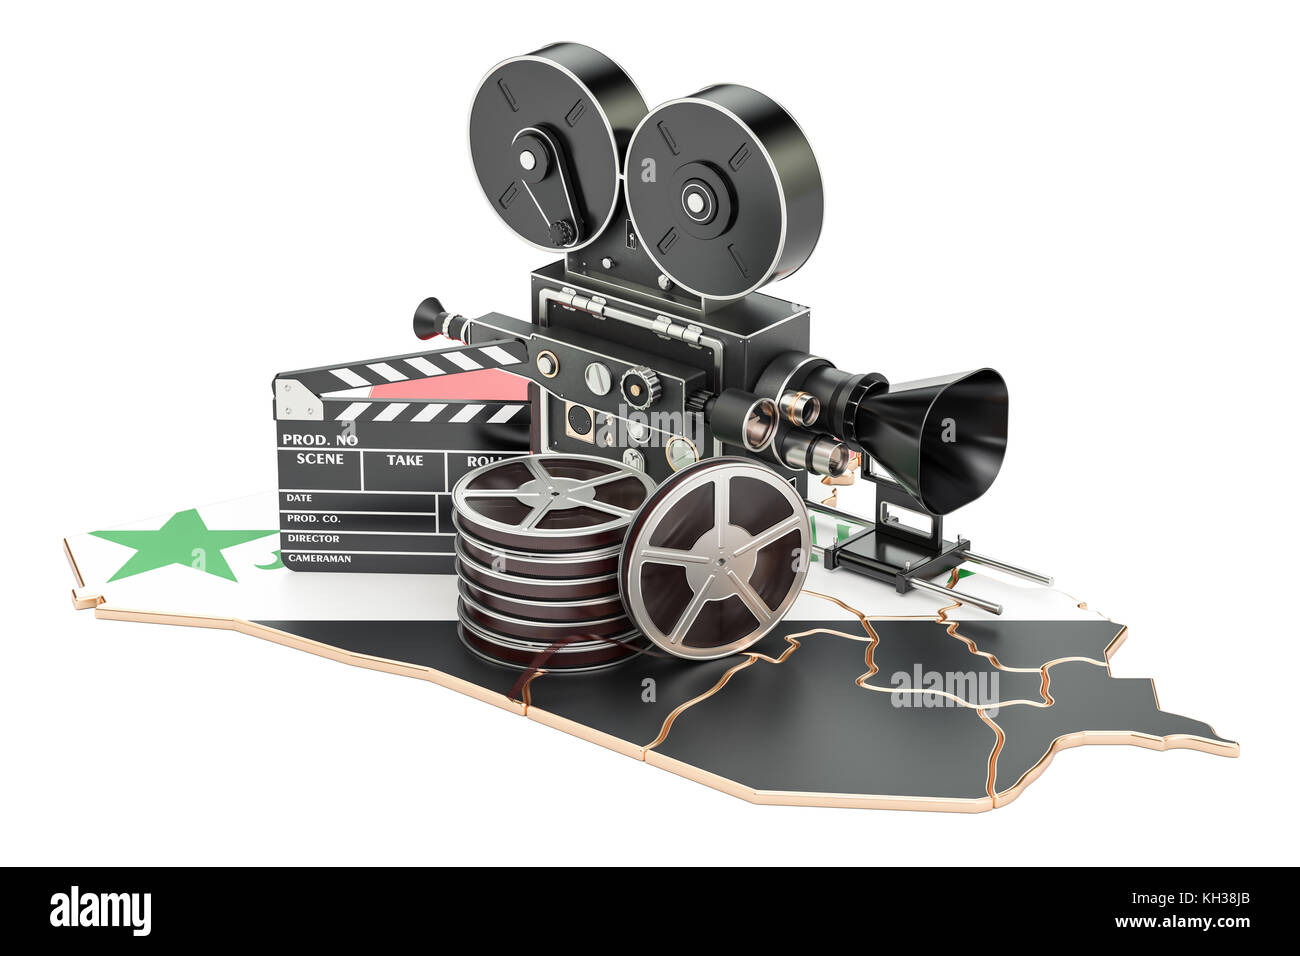 Syrische Kinematographie, Filmindustrie Konzept. 3D-Rendering auf weißem Hintergrund Stockfoto